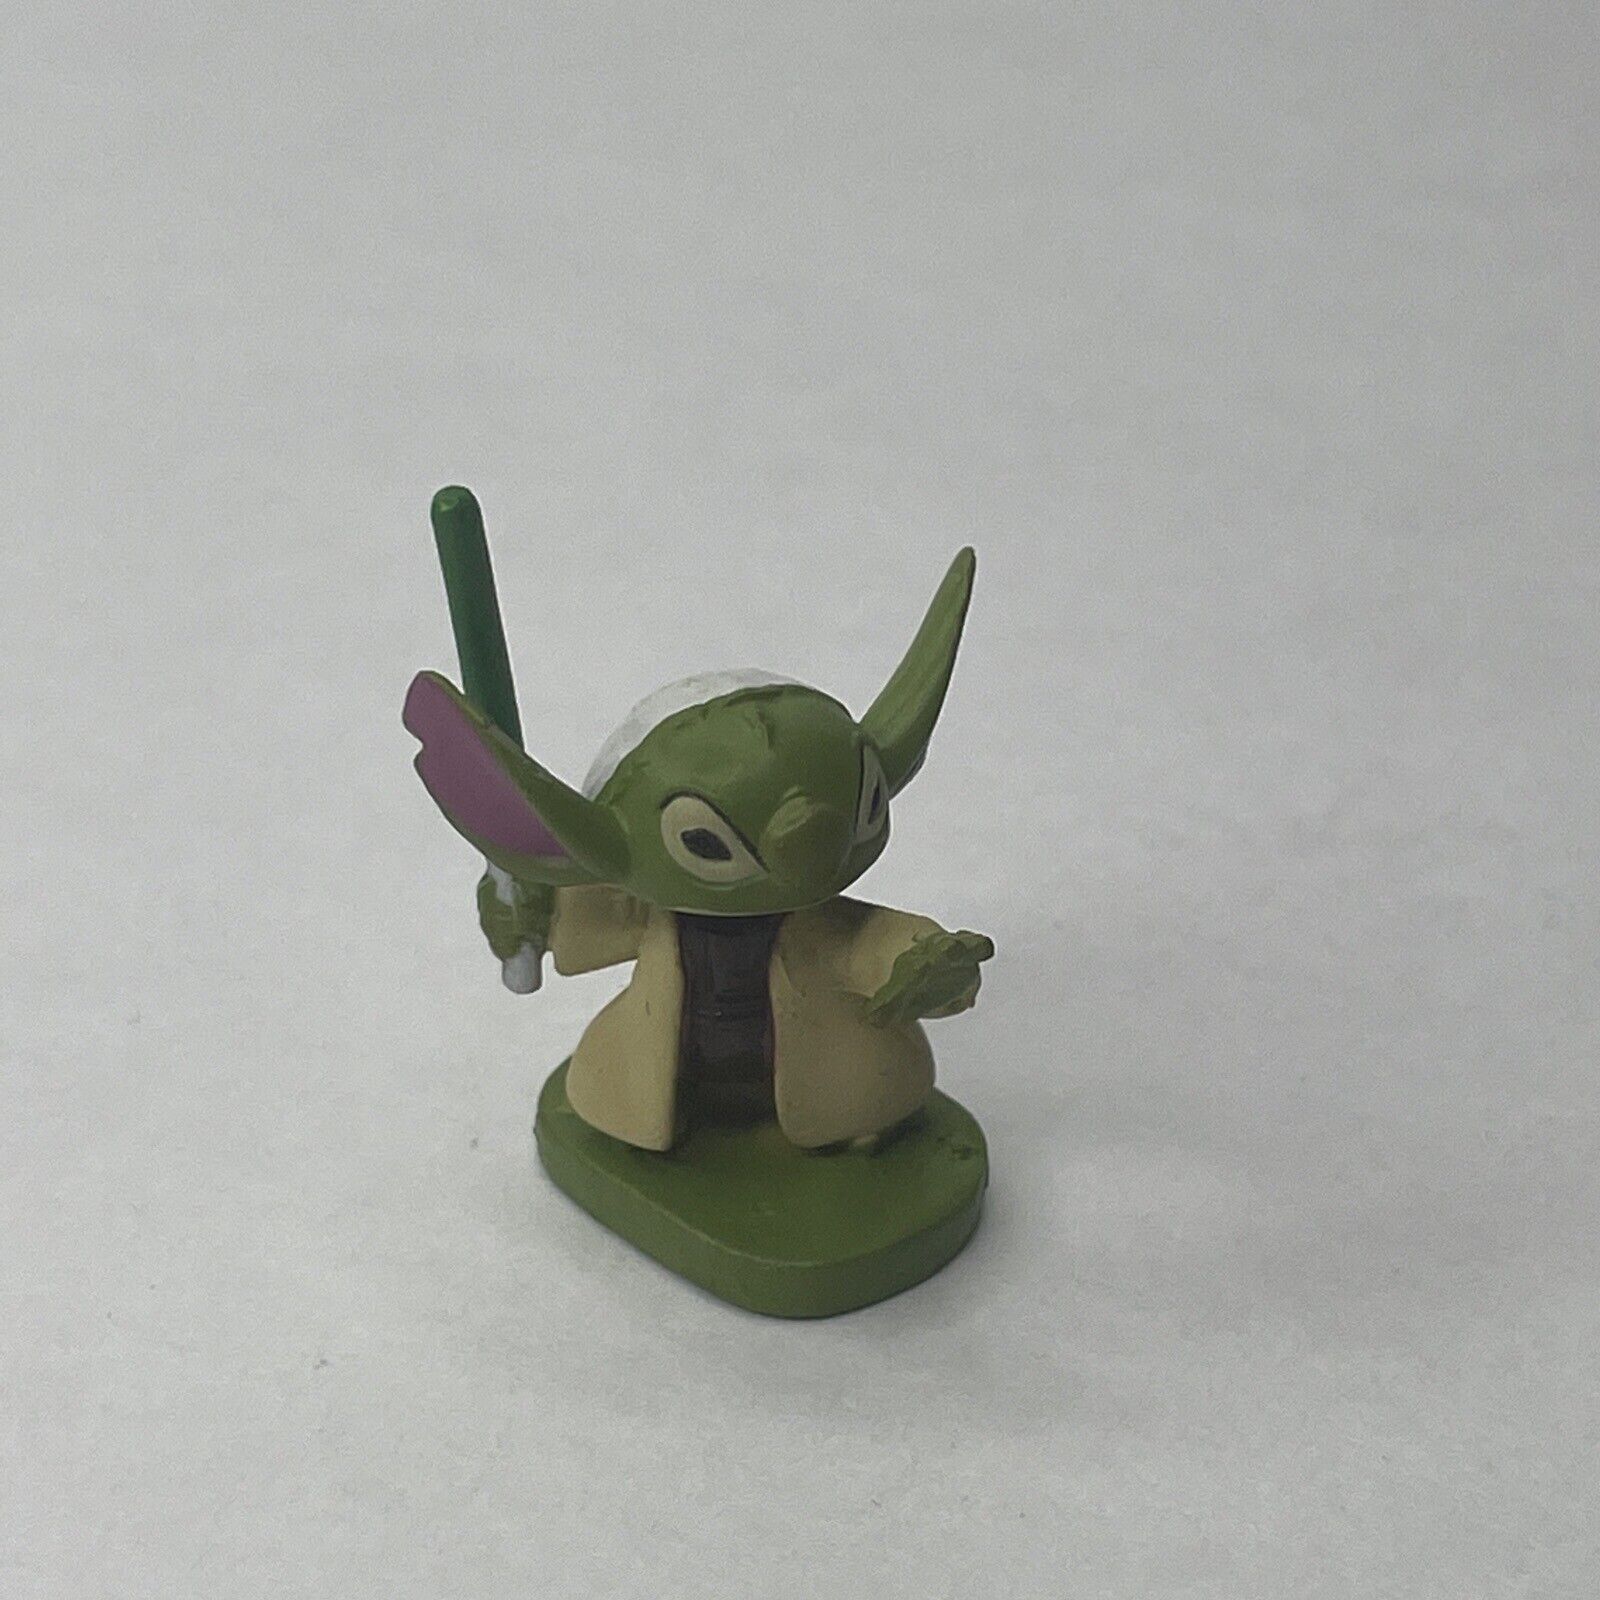 Disney LFL 2011 Star Wars Series 3 Stitch As Yoda Mini Figure 1 Inch Tall #90